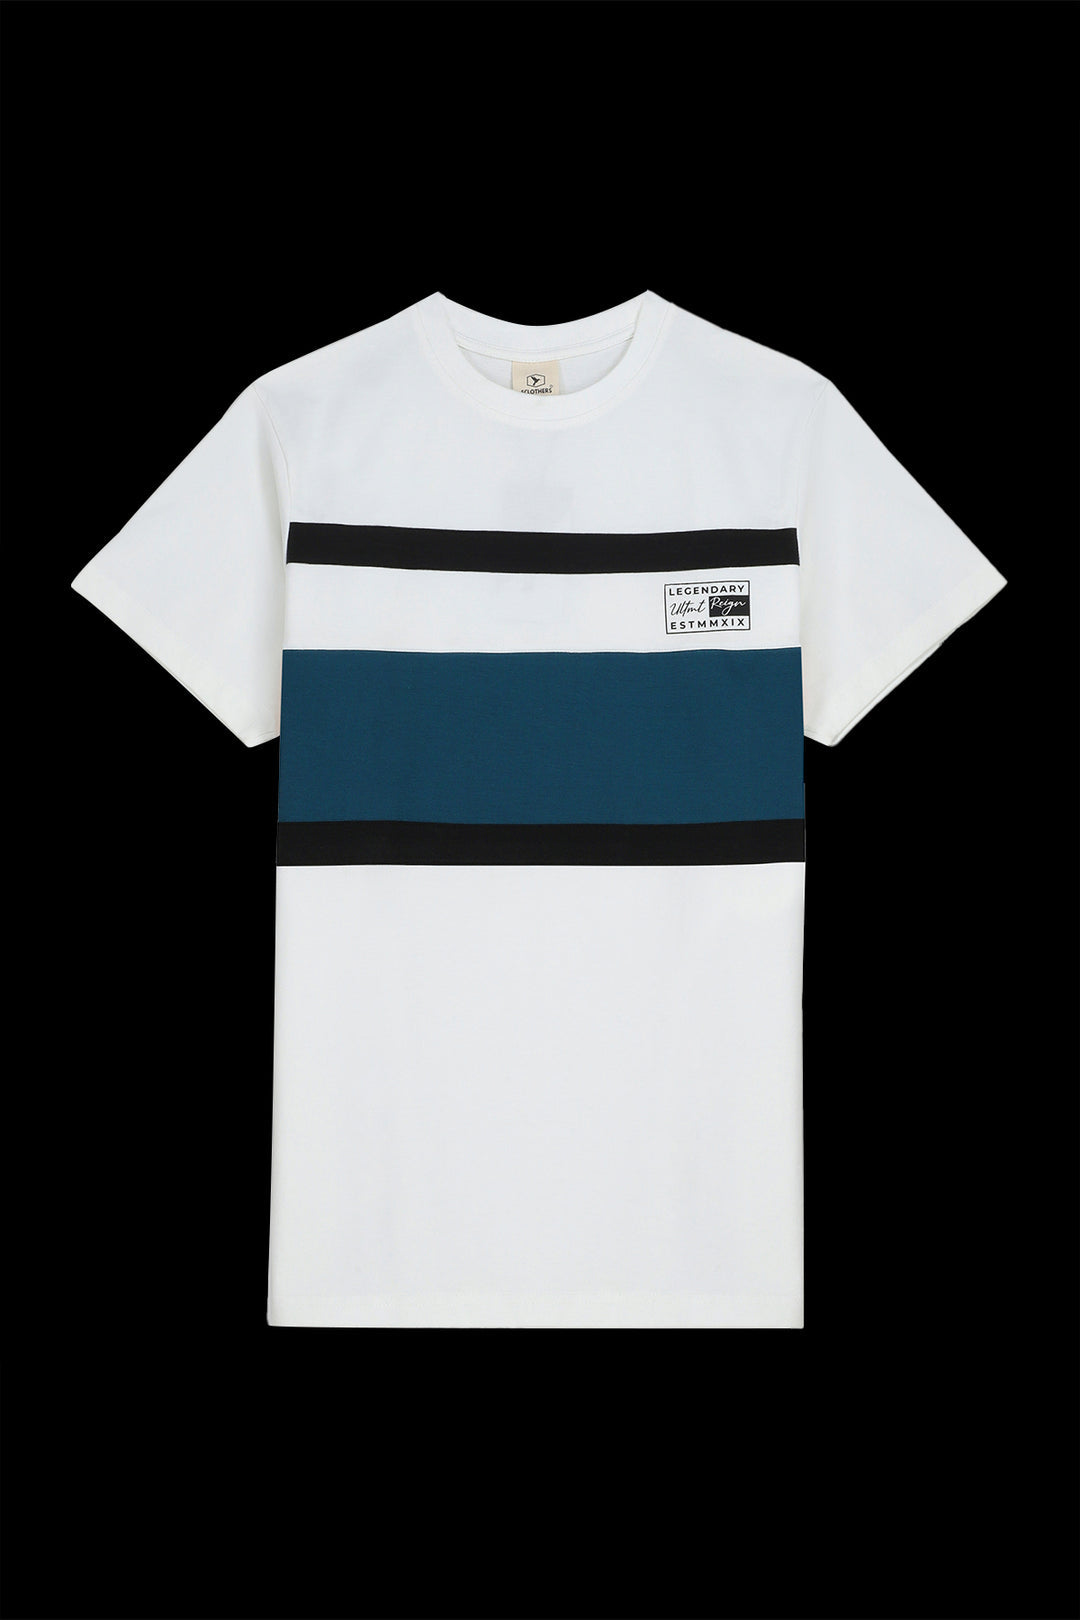 Legendary White & Green Color Block T-Shirt (Plus Size) - S23 - MT0305P